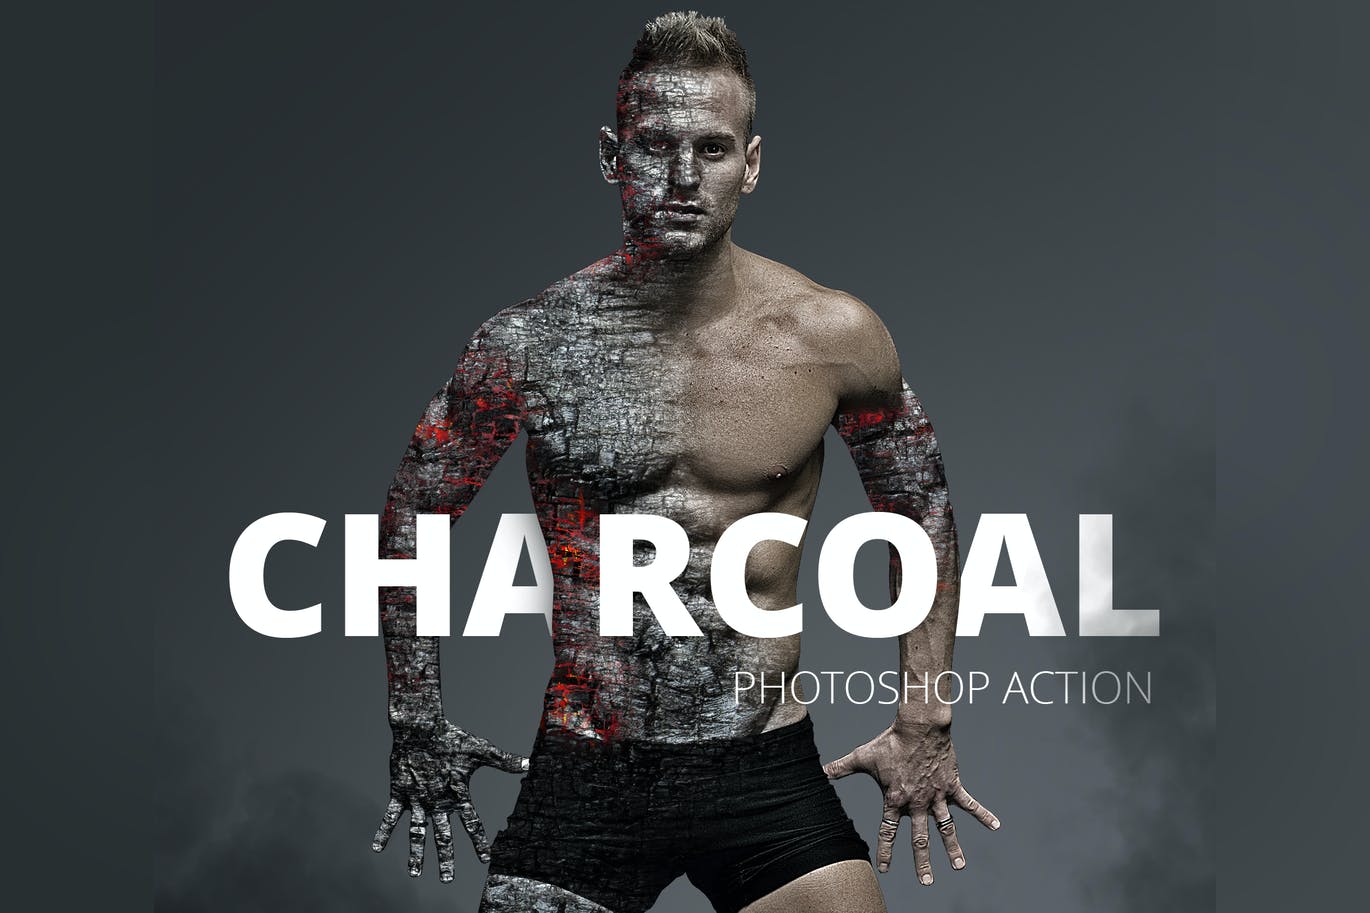 木炭燃烧的照片特效处理Photoshop动作 Charcoal Photoshop Action设计素材模板